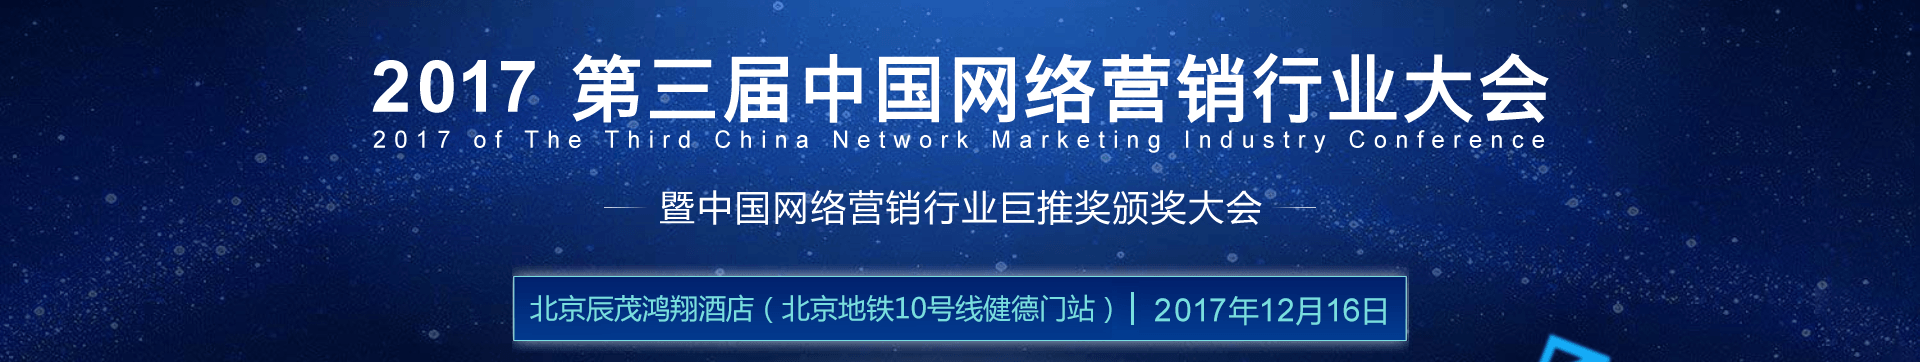 第四届中国网络营销行业大会（CNMIC 2018 北京）